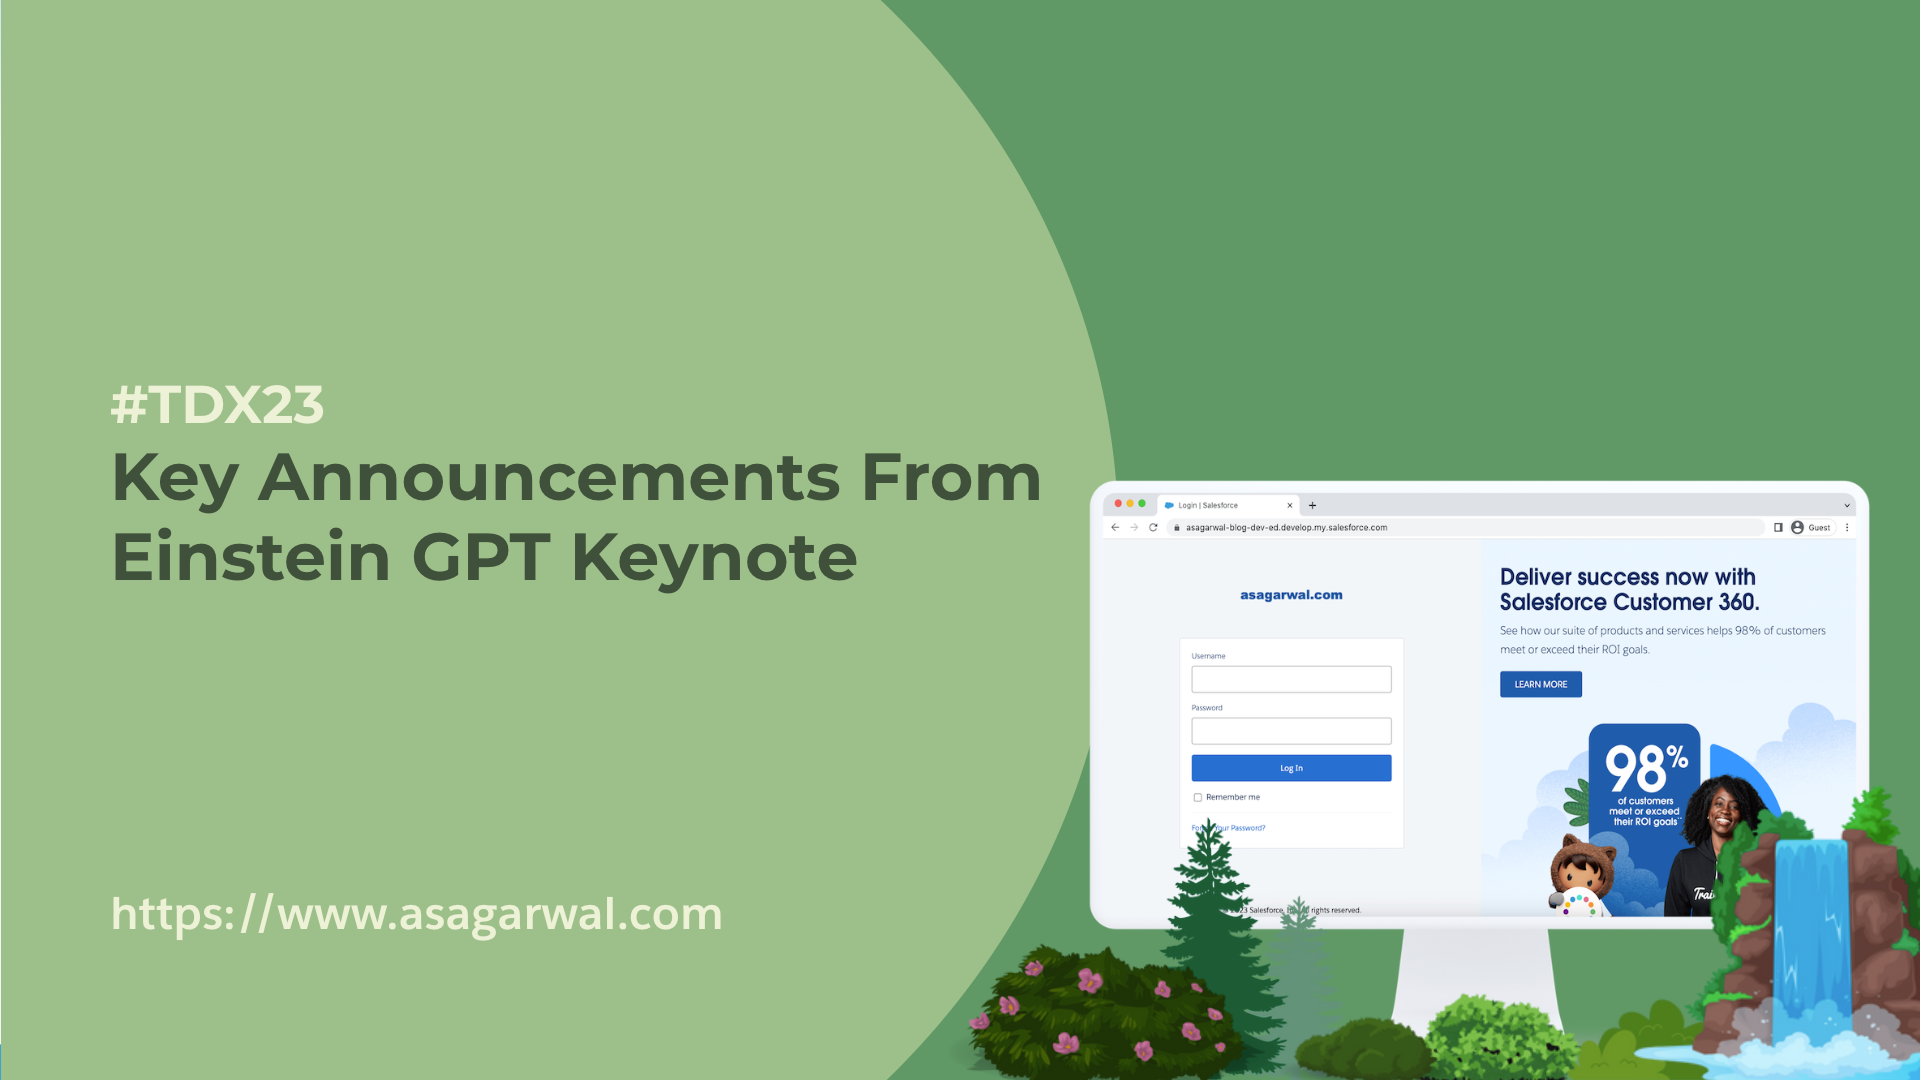 #TDX23 Key Announcements From Einstein GPT Keynote